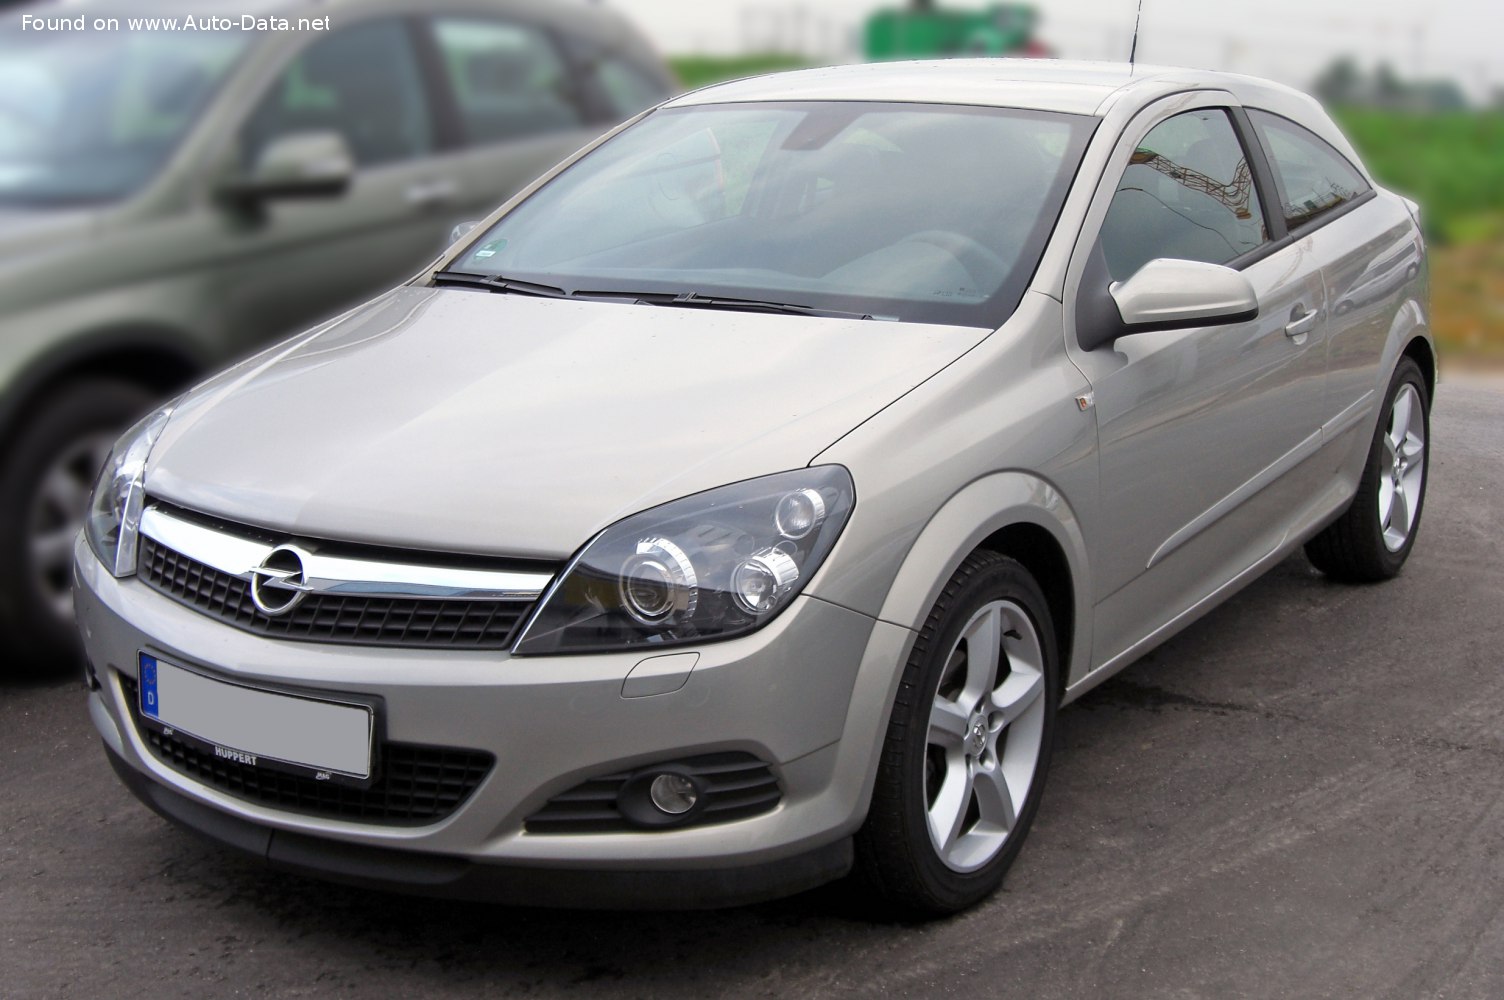 2007 Opel Astra H GTC (facelift 2007) 1.6 Turbo ECOTEC (180 Hp)